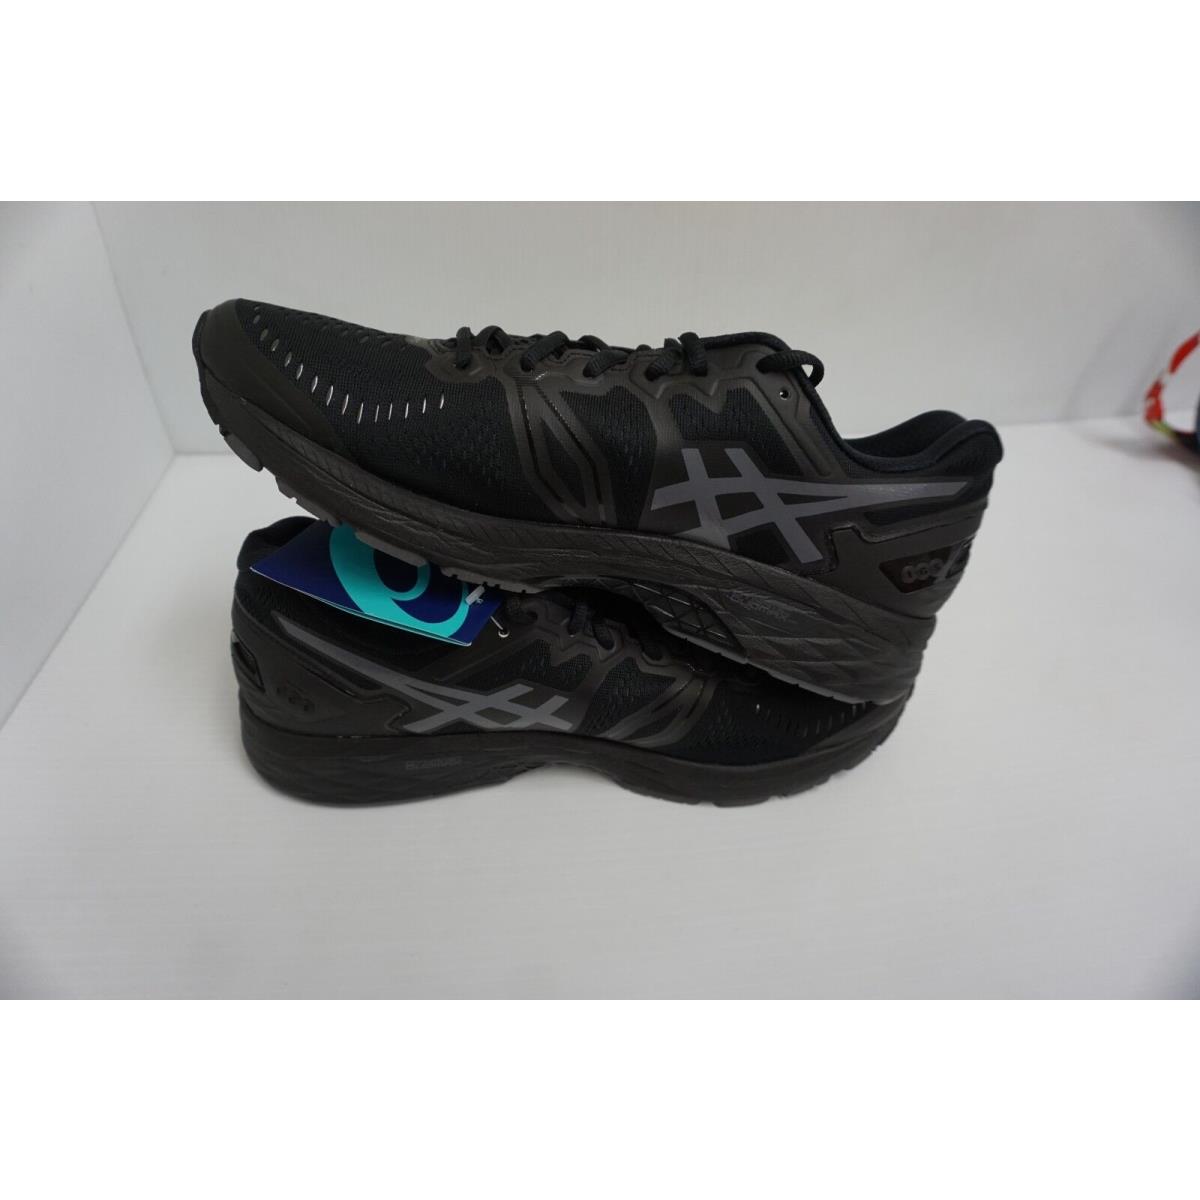 Asics Men S Gel Kayano 23 Black Onyx Carbon Running Shoes Size 8 5 Us Asics Shoes Black Sportiptop